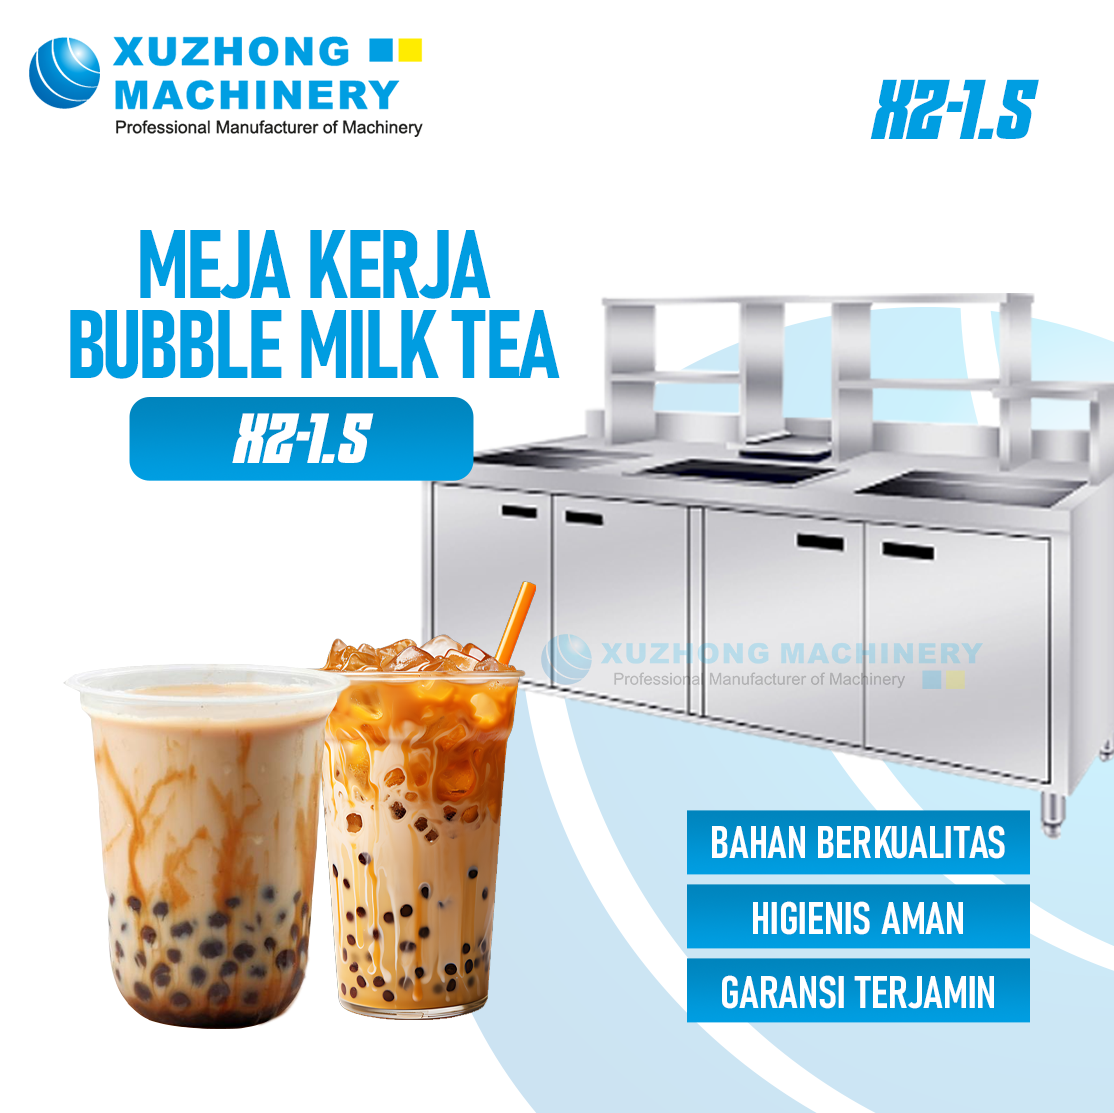 XZ-1.5 Rak Dan Meja Kerja Bubble Milk Tea